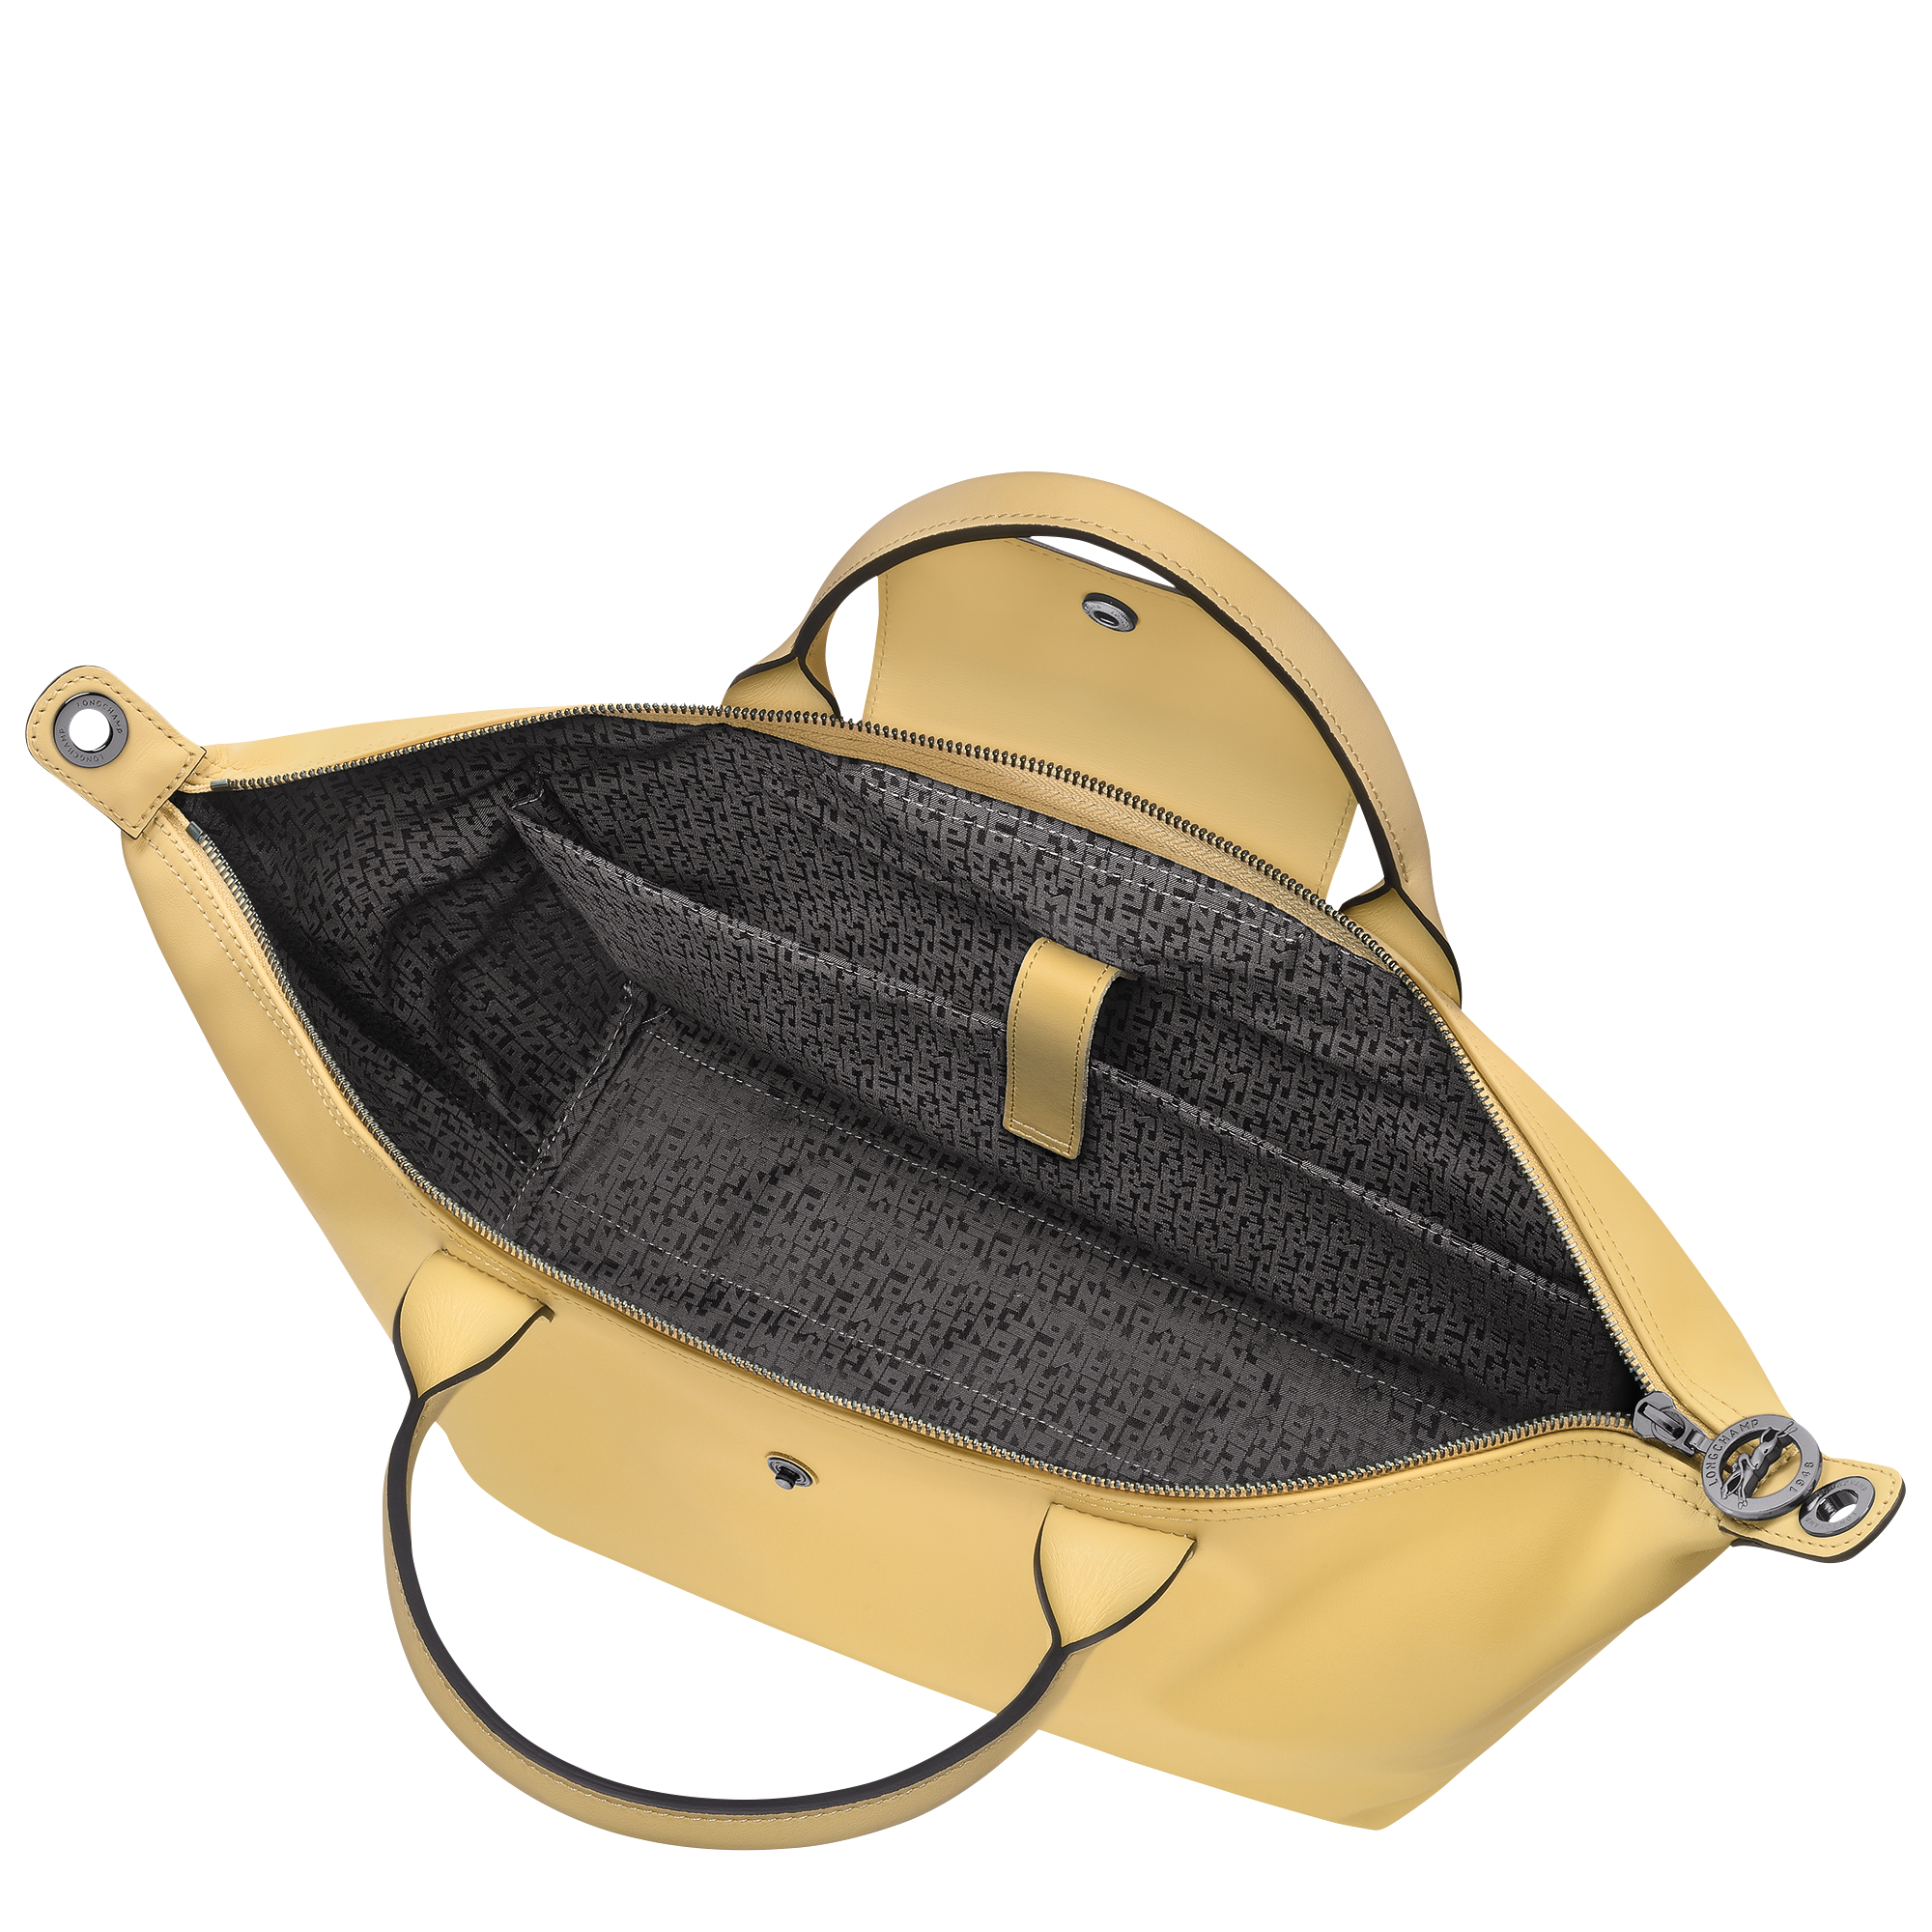 Le Pliage Xtra L Handbag Wheat - Leather (10201987A81)